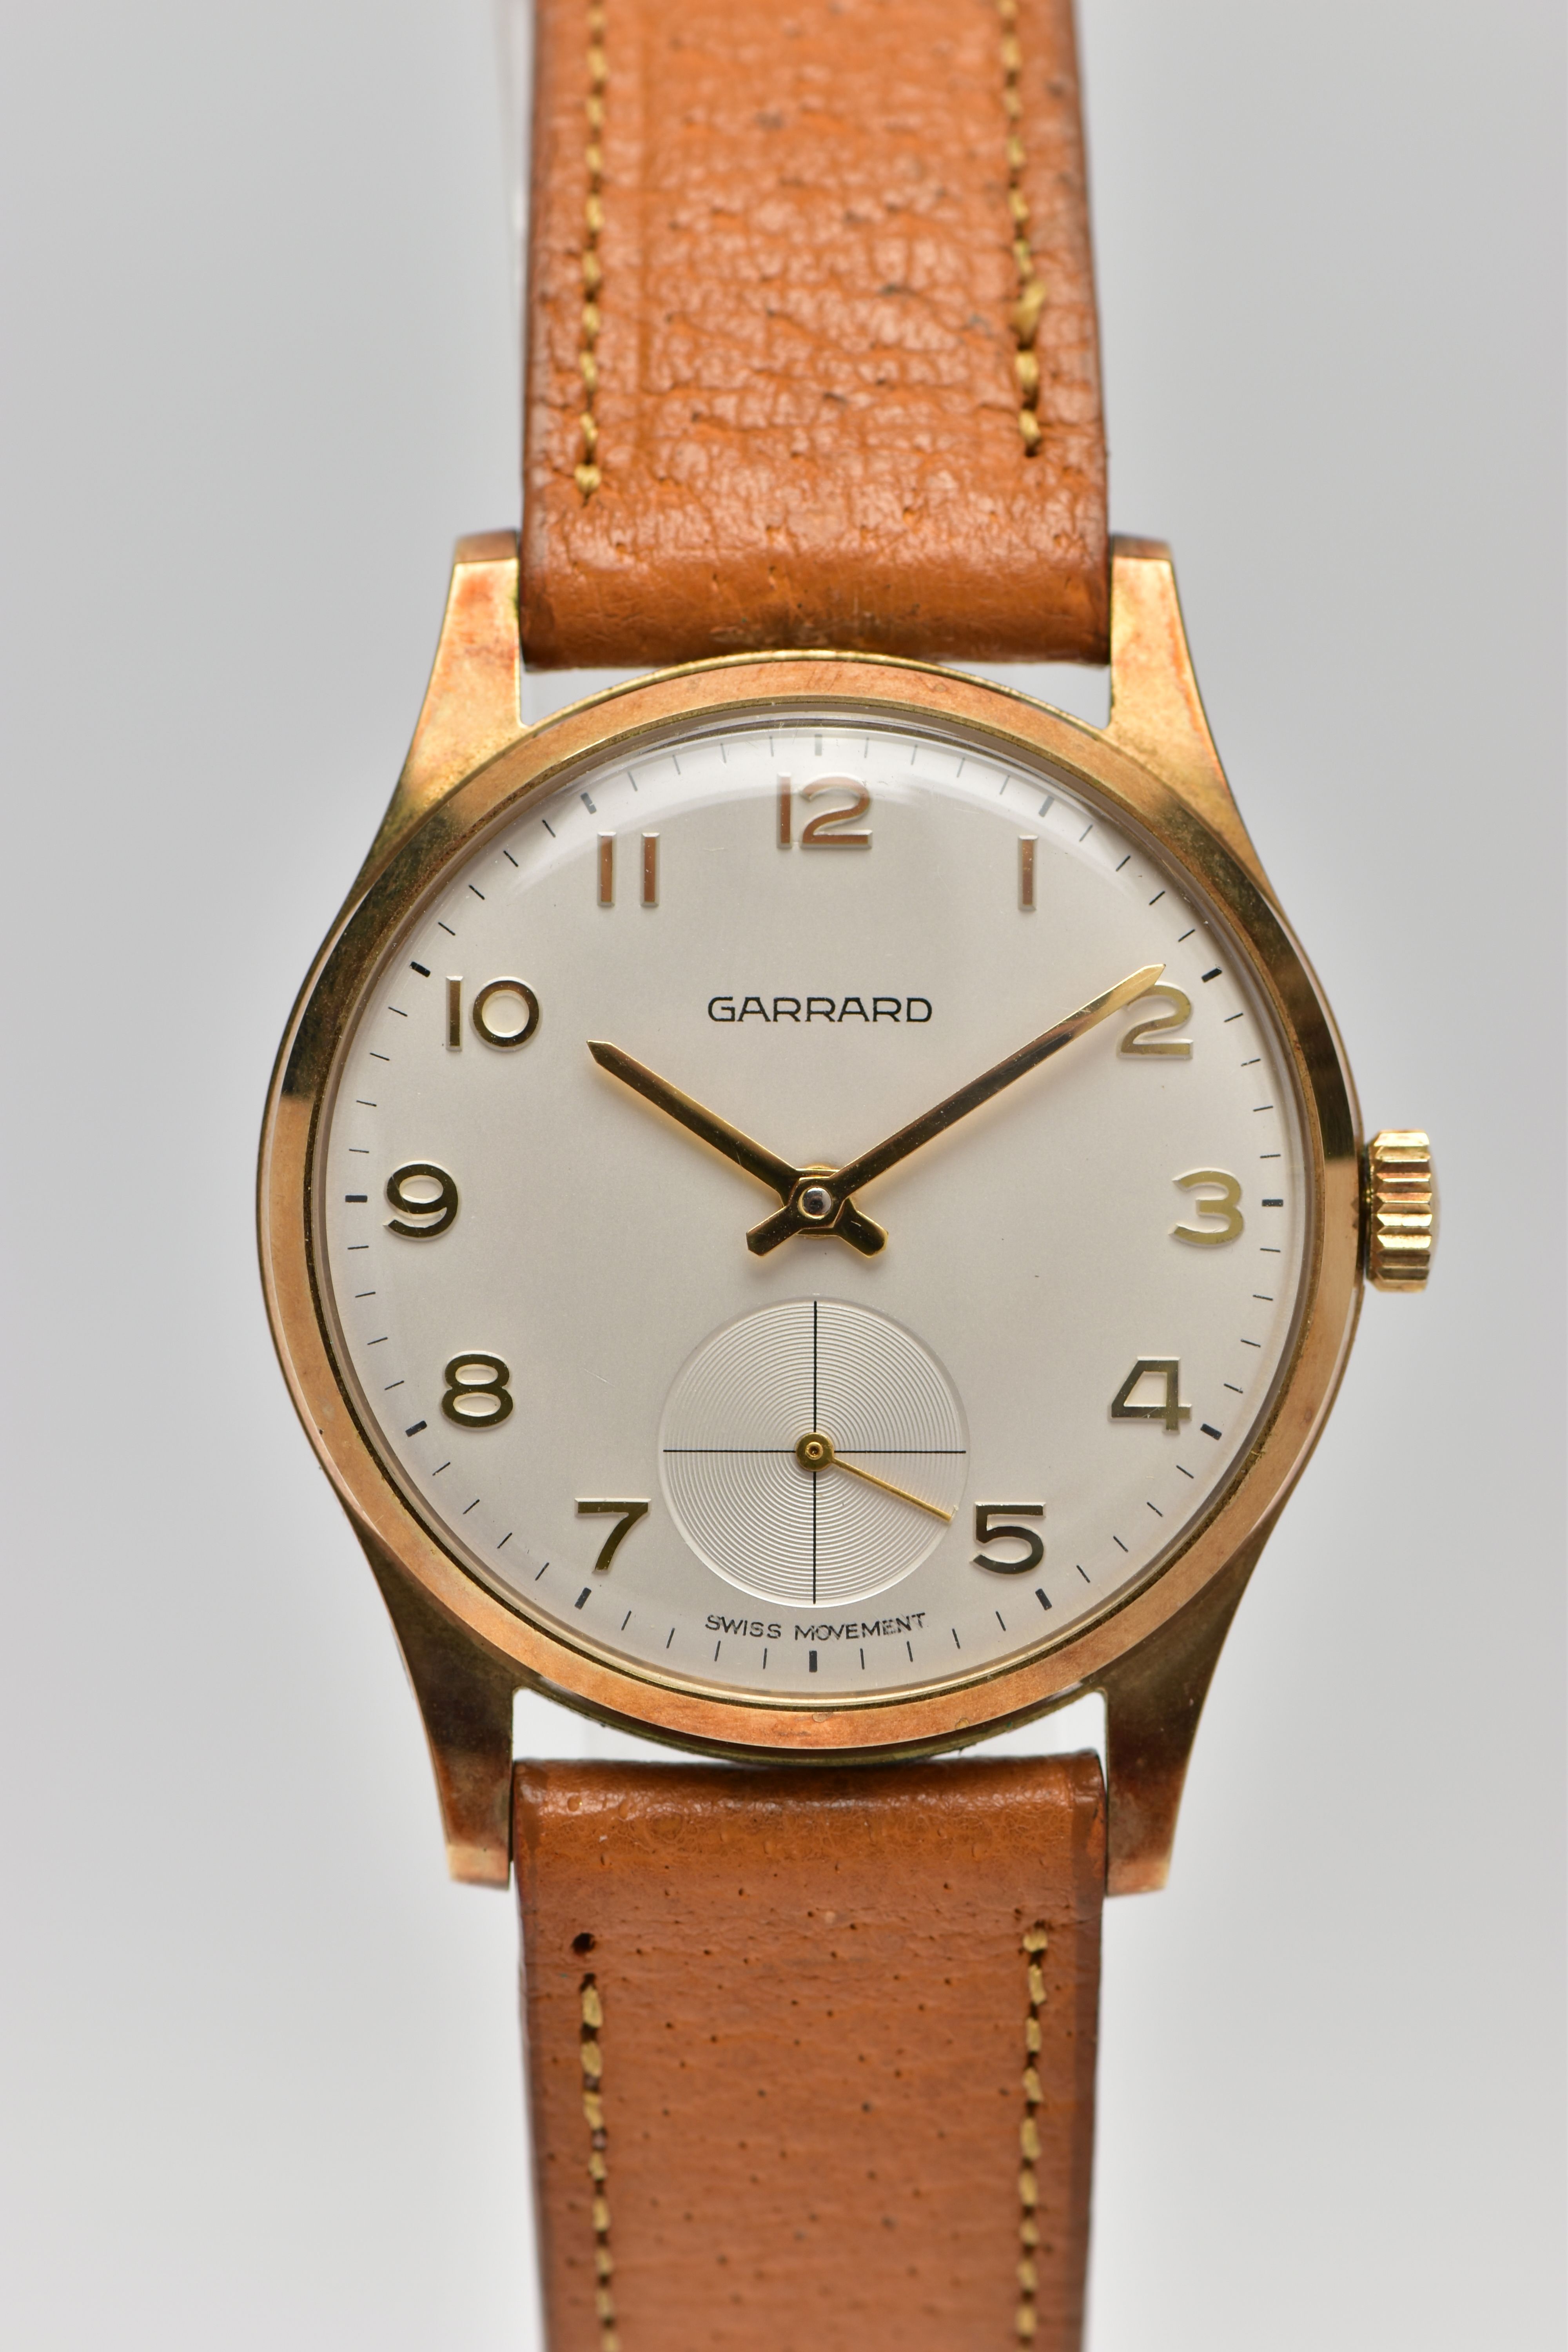 A 9CT GOLD 'GARRARD' WRISTWATCH, hand wound movement, round white dial signed 'Garrard' 'Swiss